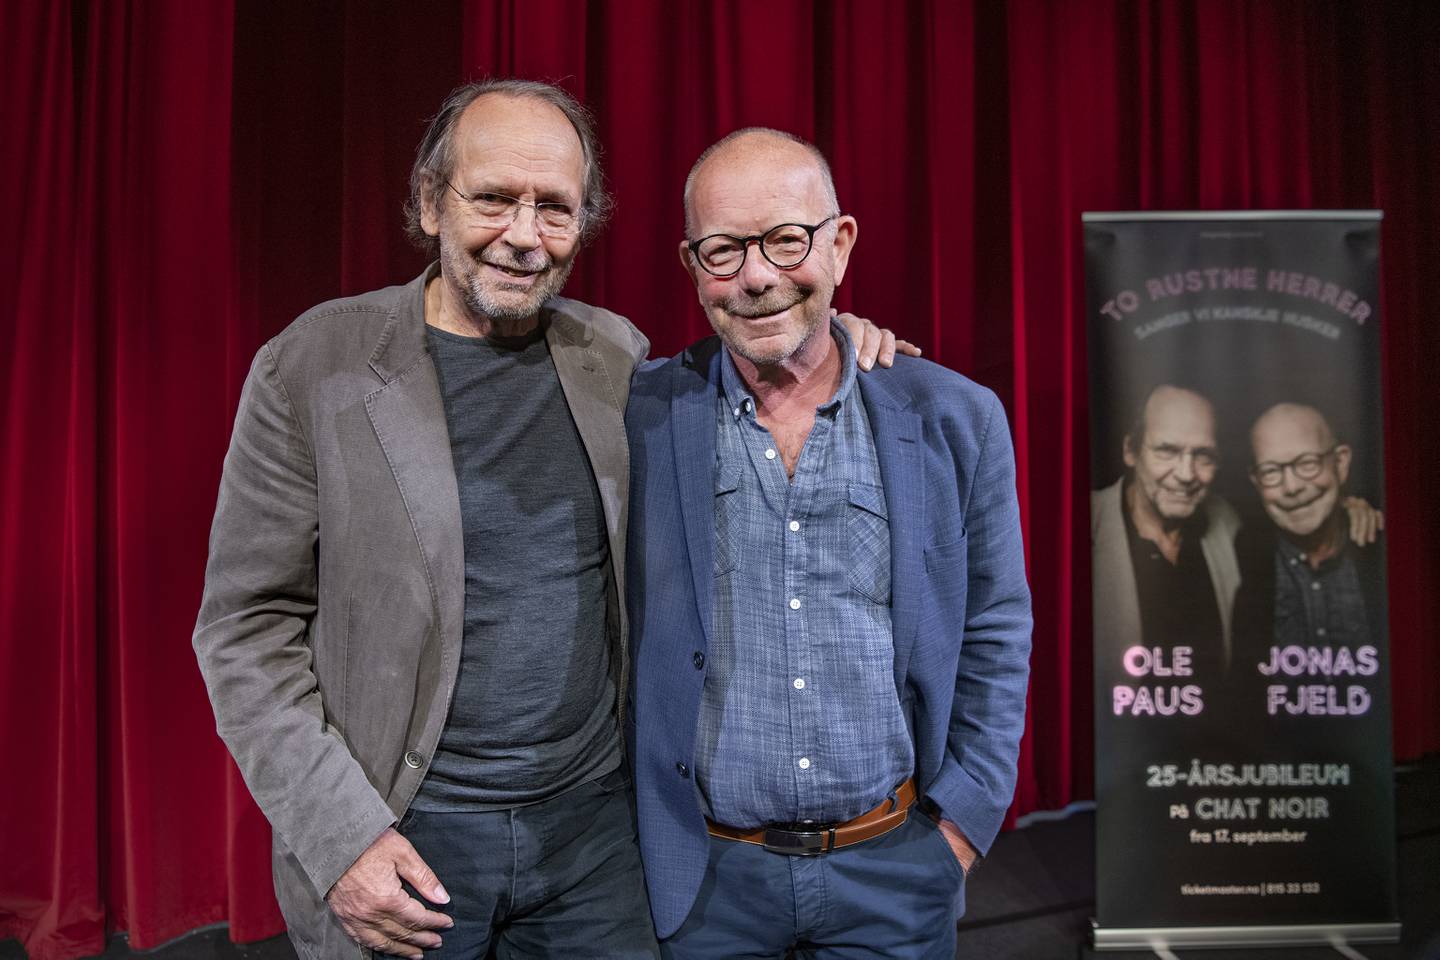 Ole Paus og Jonas Fjeld annonserte et nytt show med To Rustne Herrer på Chat Noir to dager før Norge stengte i mars 2020. Forhåpentligvis er det ennå ikke for sent...